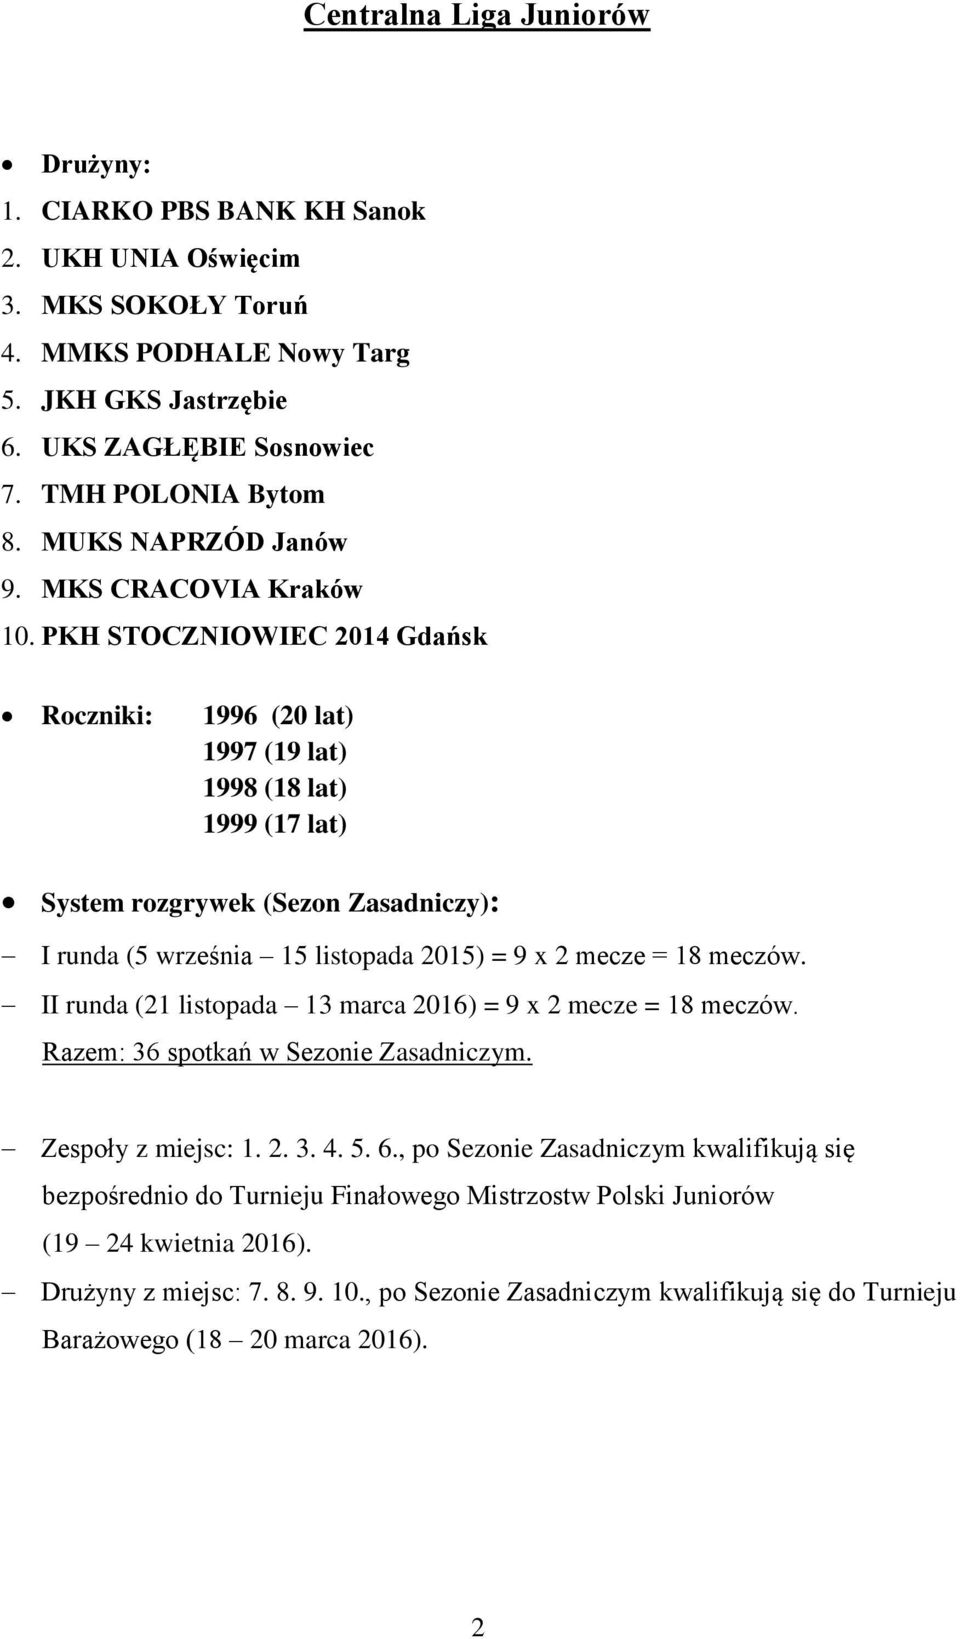 PKH STOCZNIOWIEC 2014 Gdańsk Roczniki: 1996 (20 lat) 1997 (19 lat) 1998 (18 lat) 1999 (17 lat) System rozgrywek (Sezon Zasadniczy): I runda (5 września 15 listopada 2015) = 9 x 2 mecze = 18 meczów.